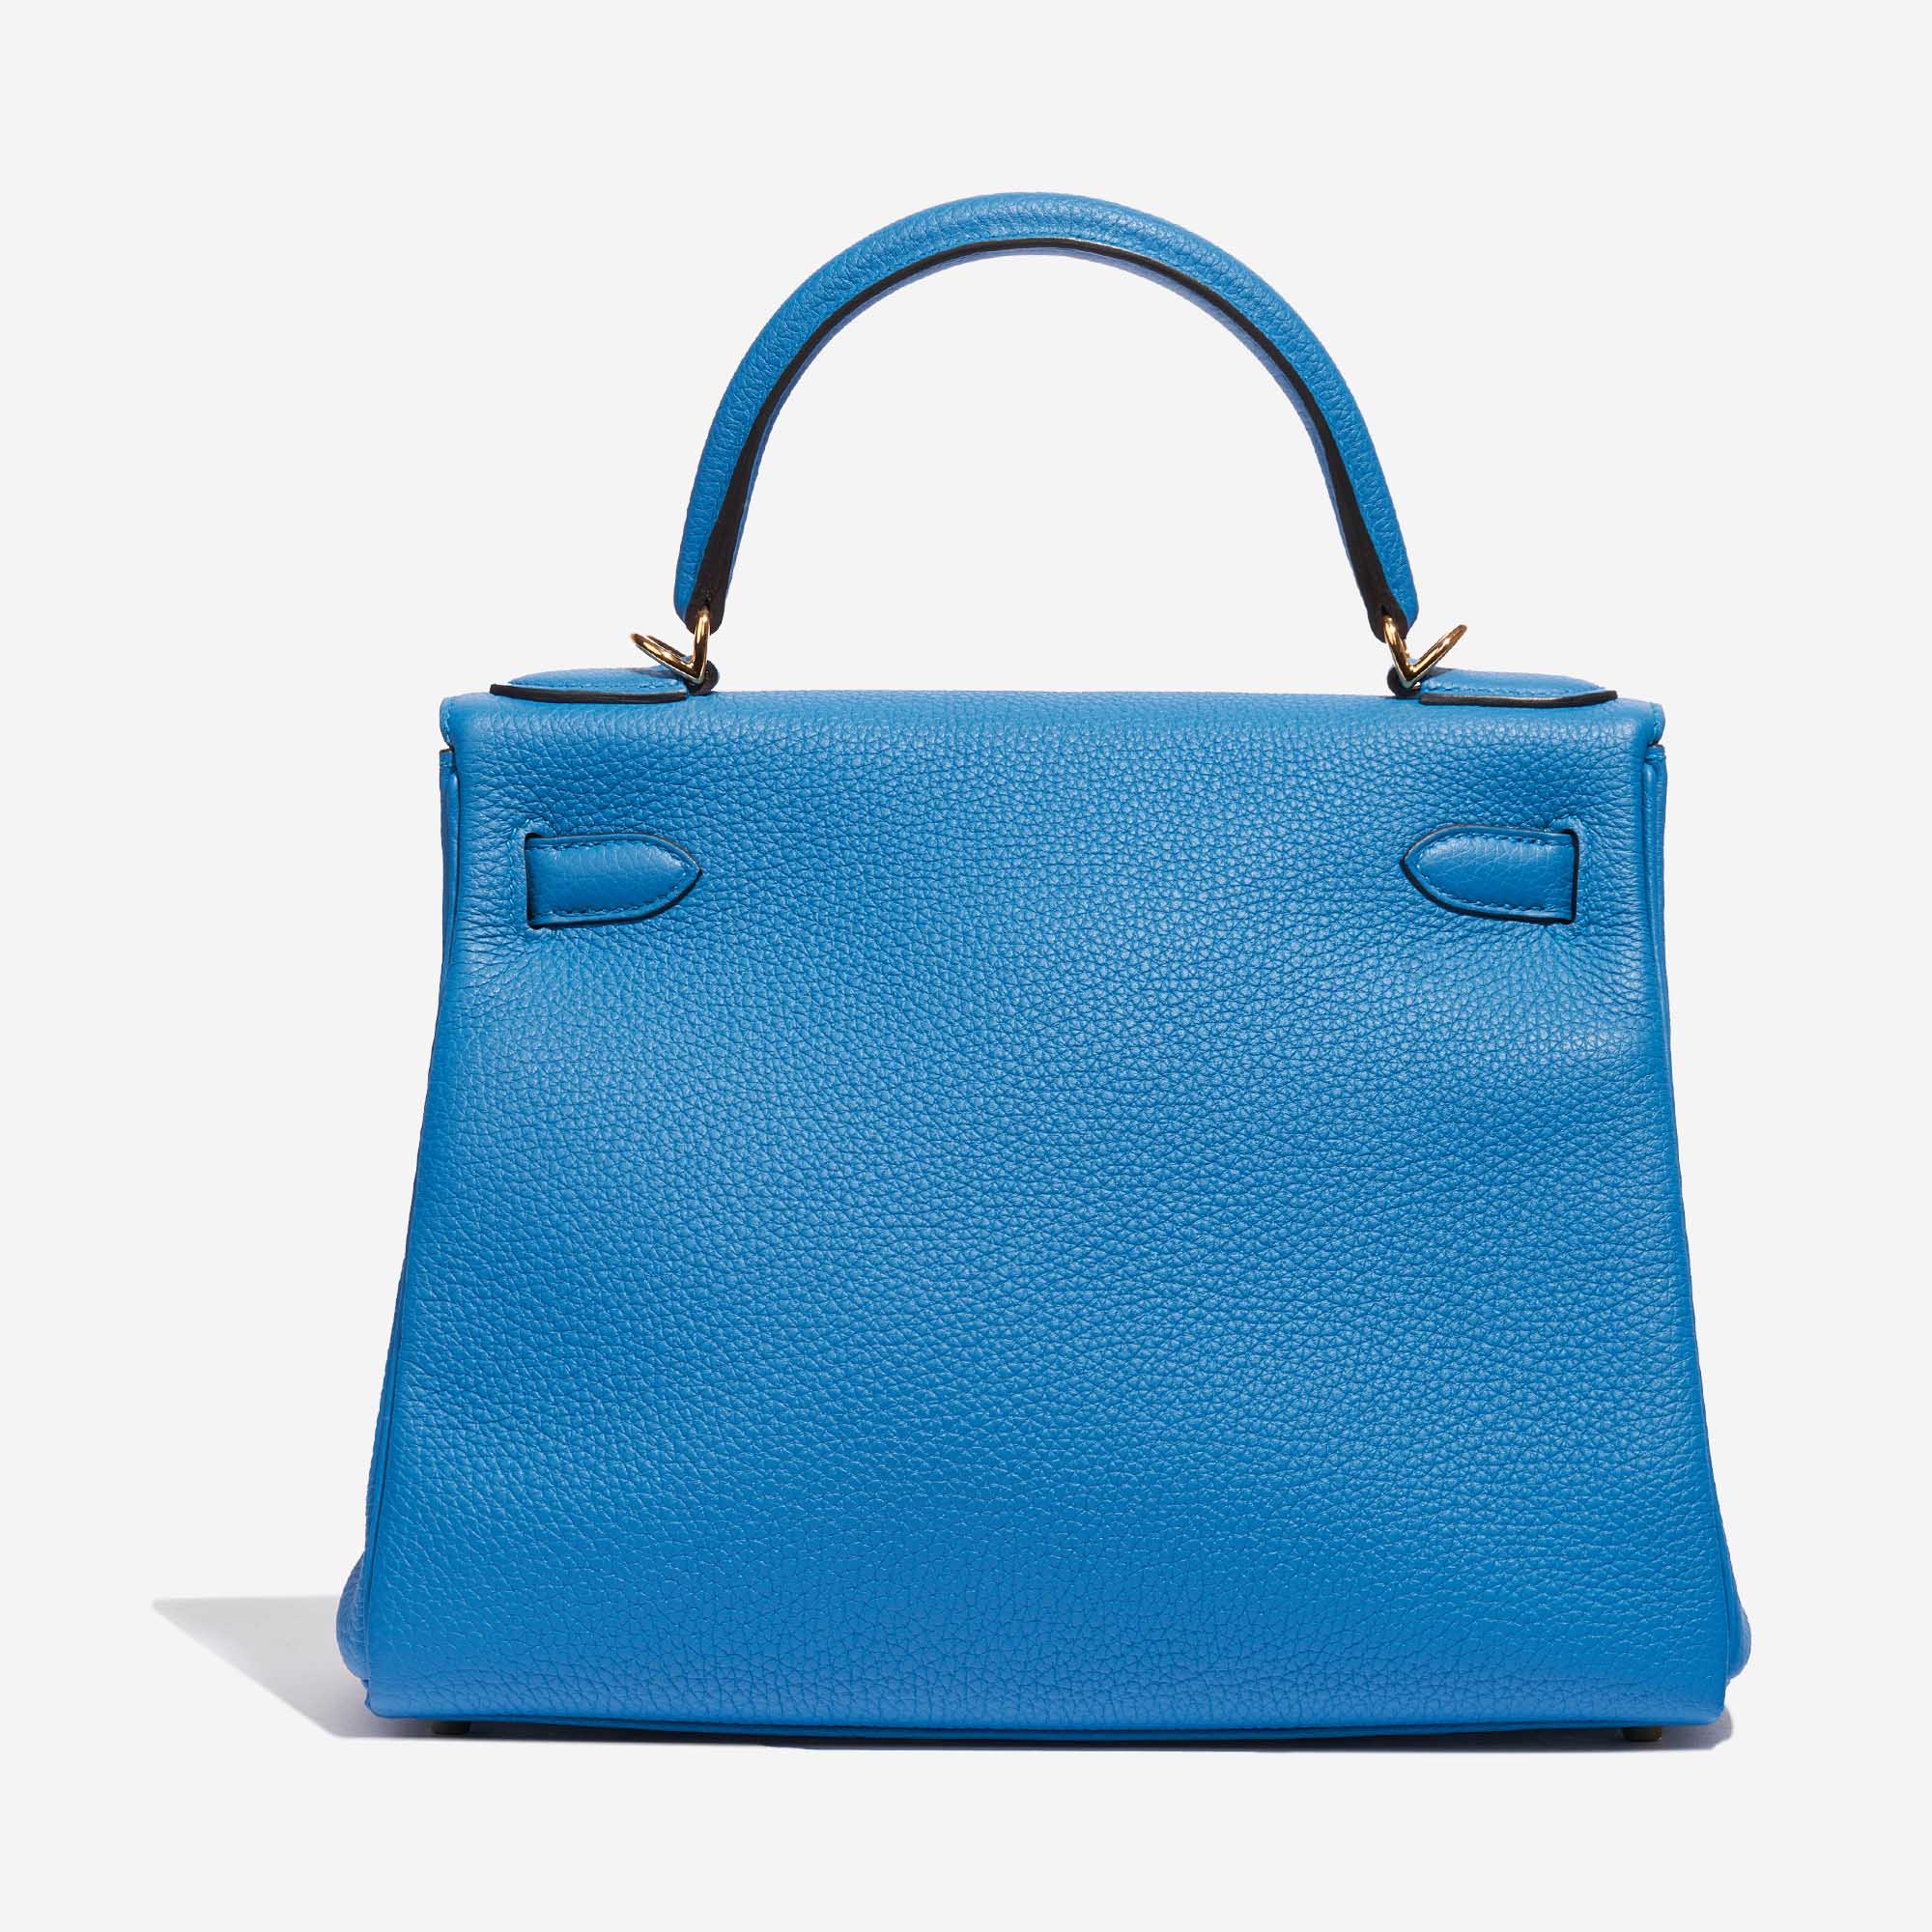 Sac Hermès Kelly 28 Togo Bleu Zanzibar Bleu Retour Vendez votre sac de créateur sur Saclab.com